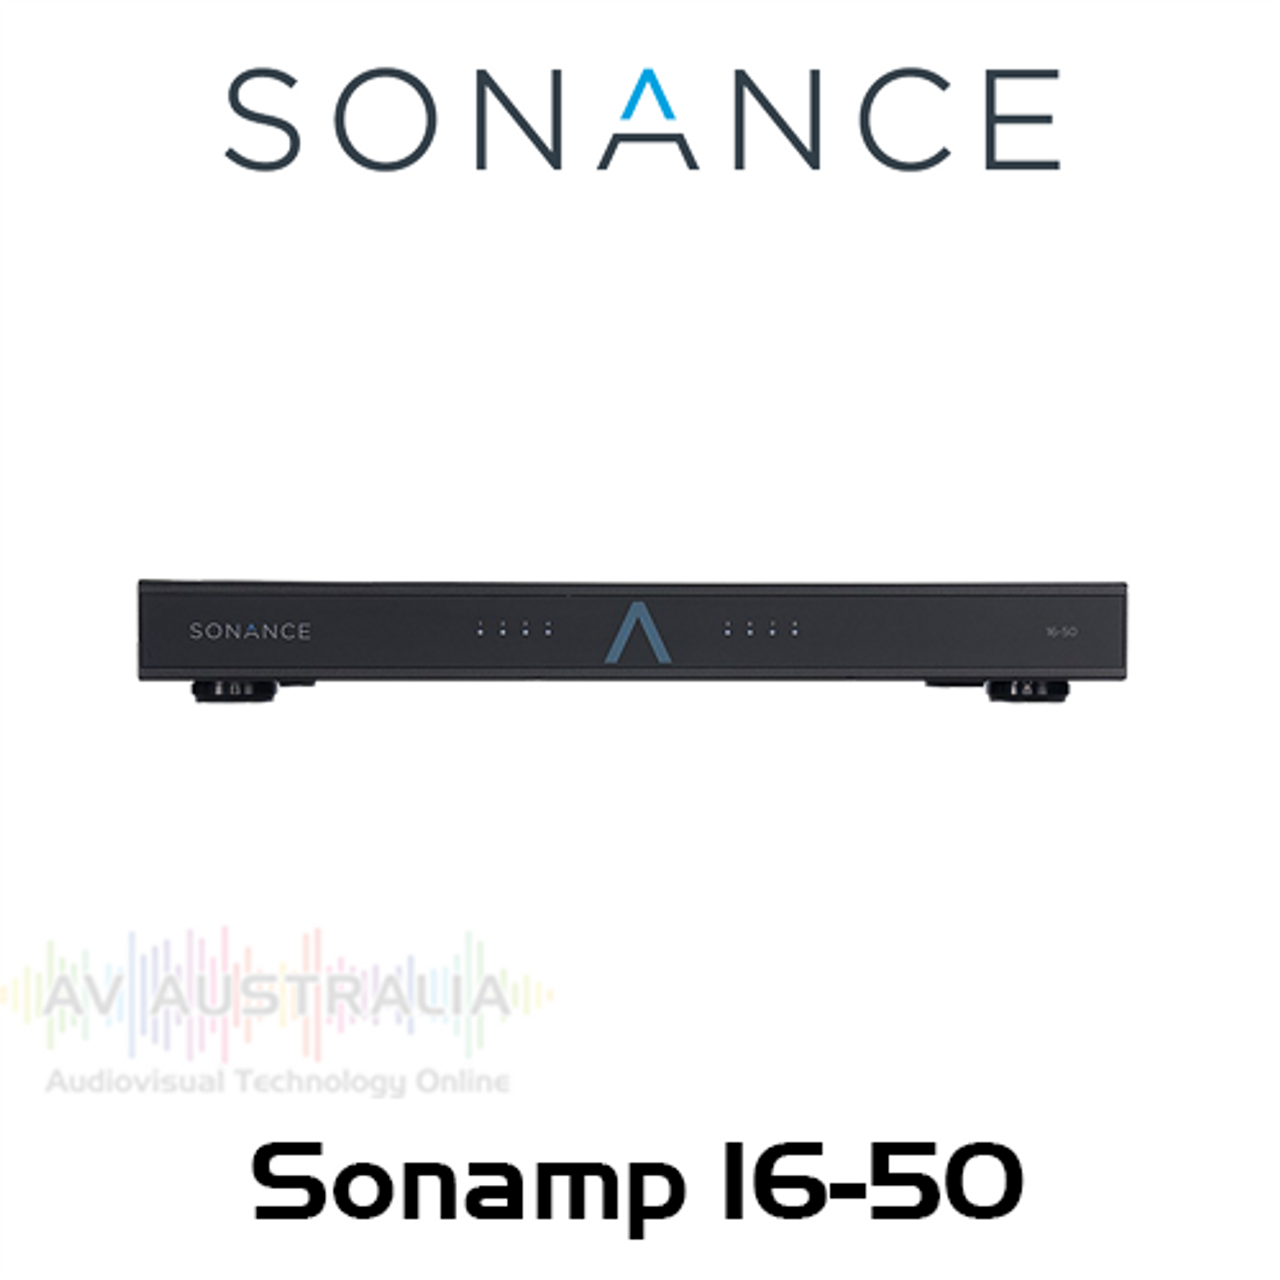 Sonance Sonamp 16-50 16-Channel 50W Digital Amplifier